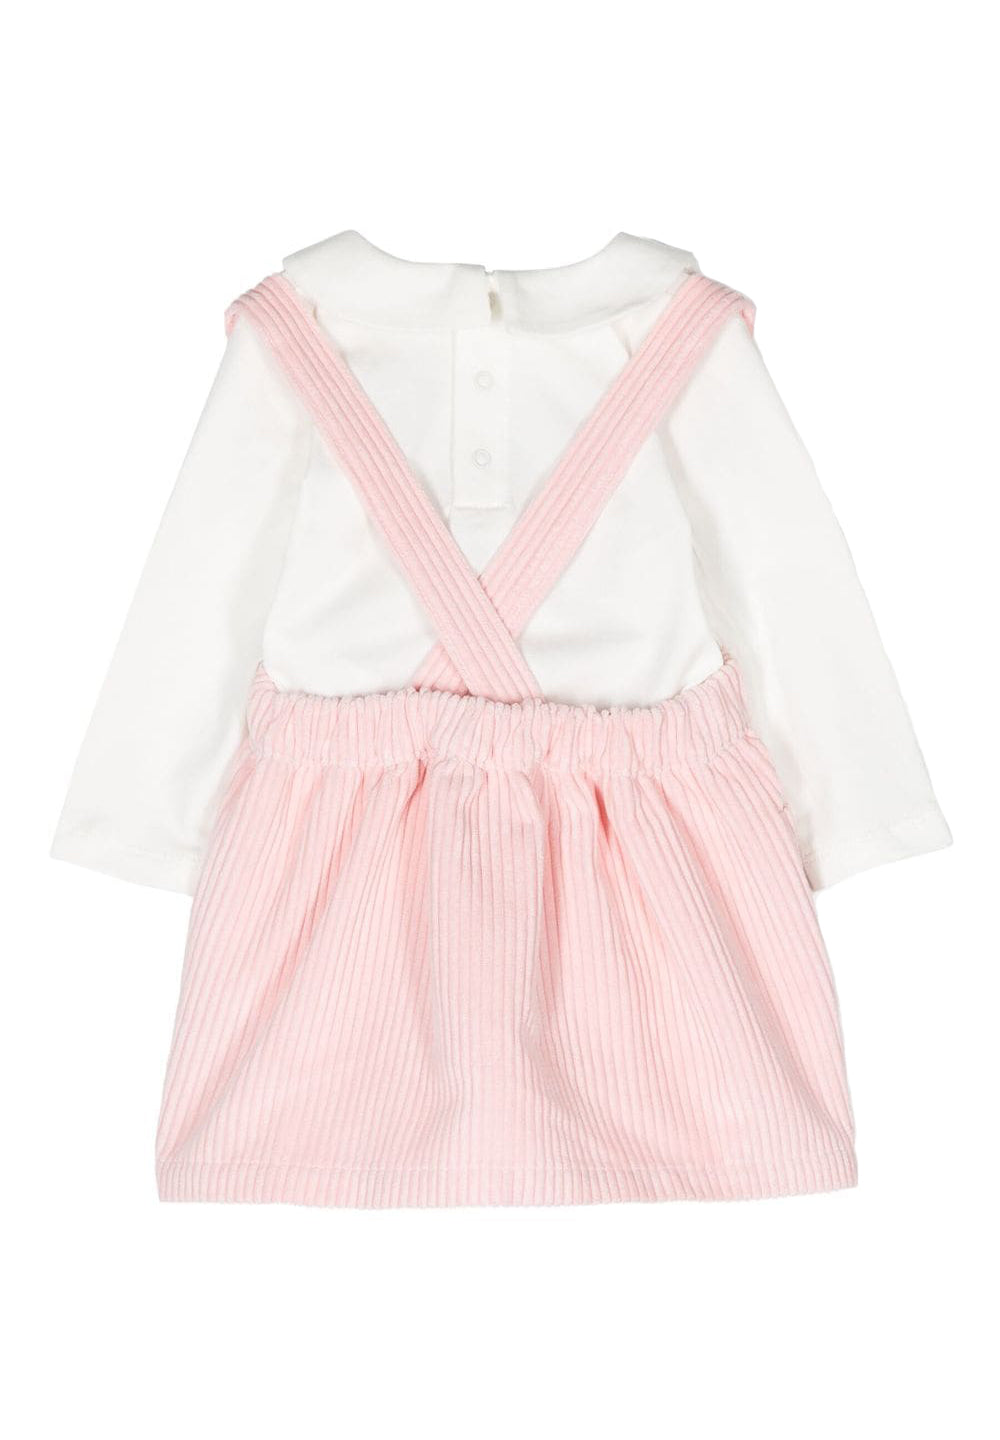 Weiß-rosa Outfit für Mädchen